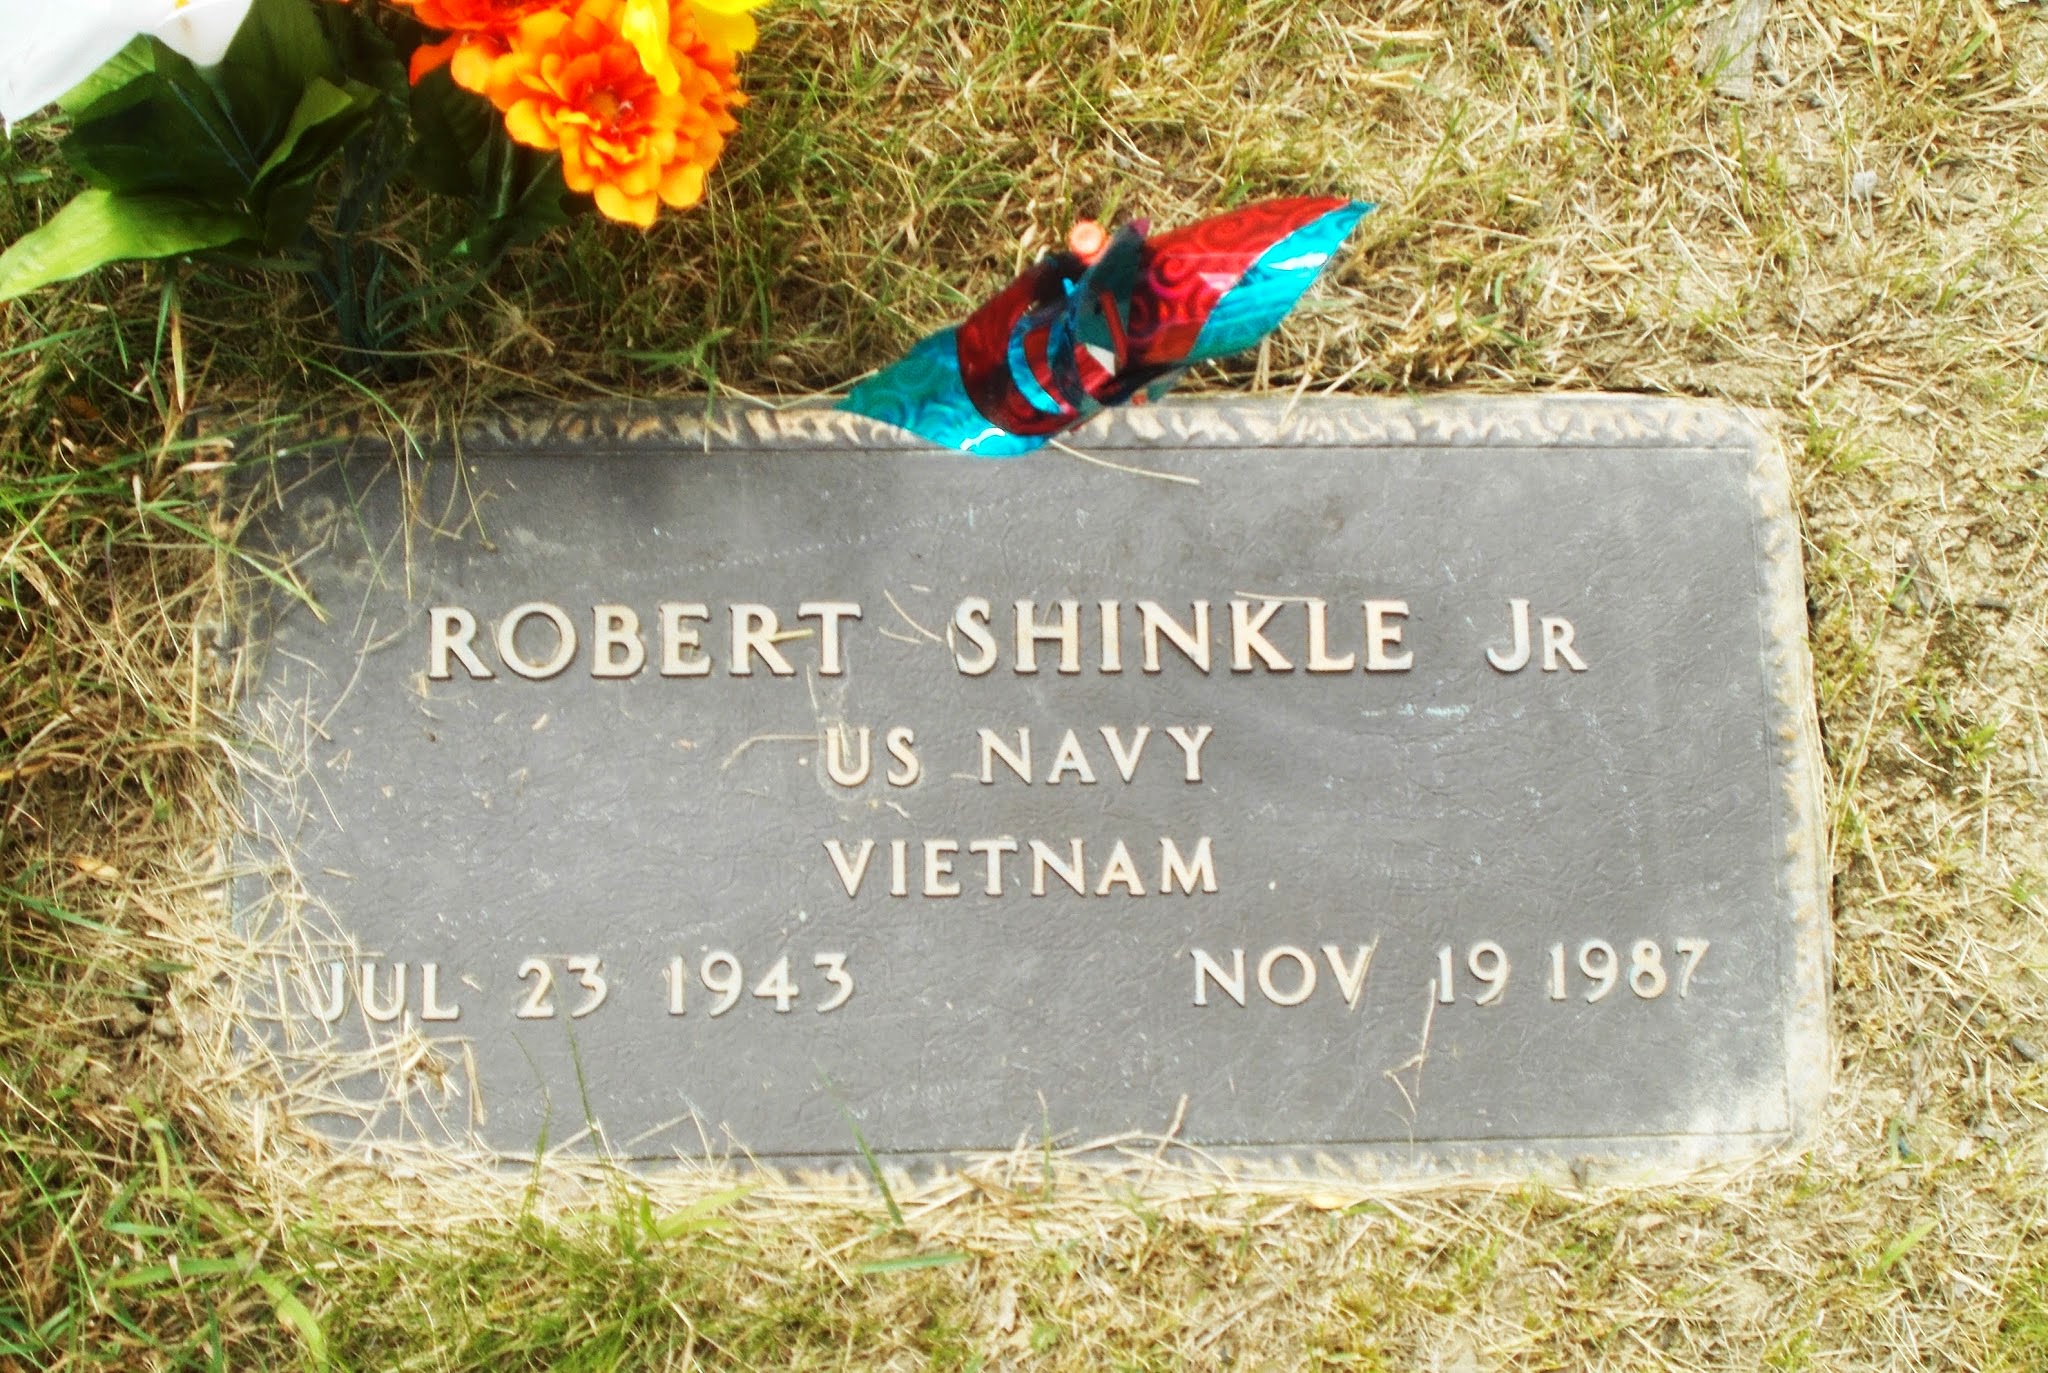 Robert Shinkle, Jr